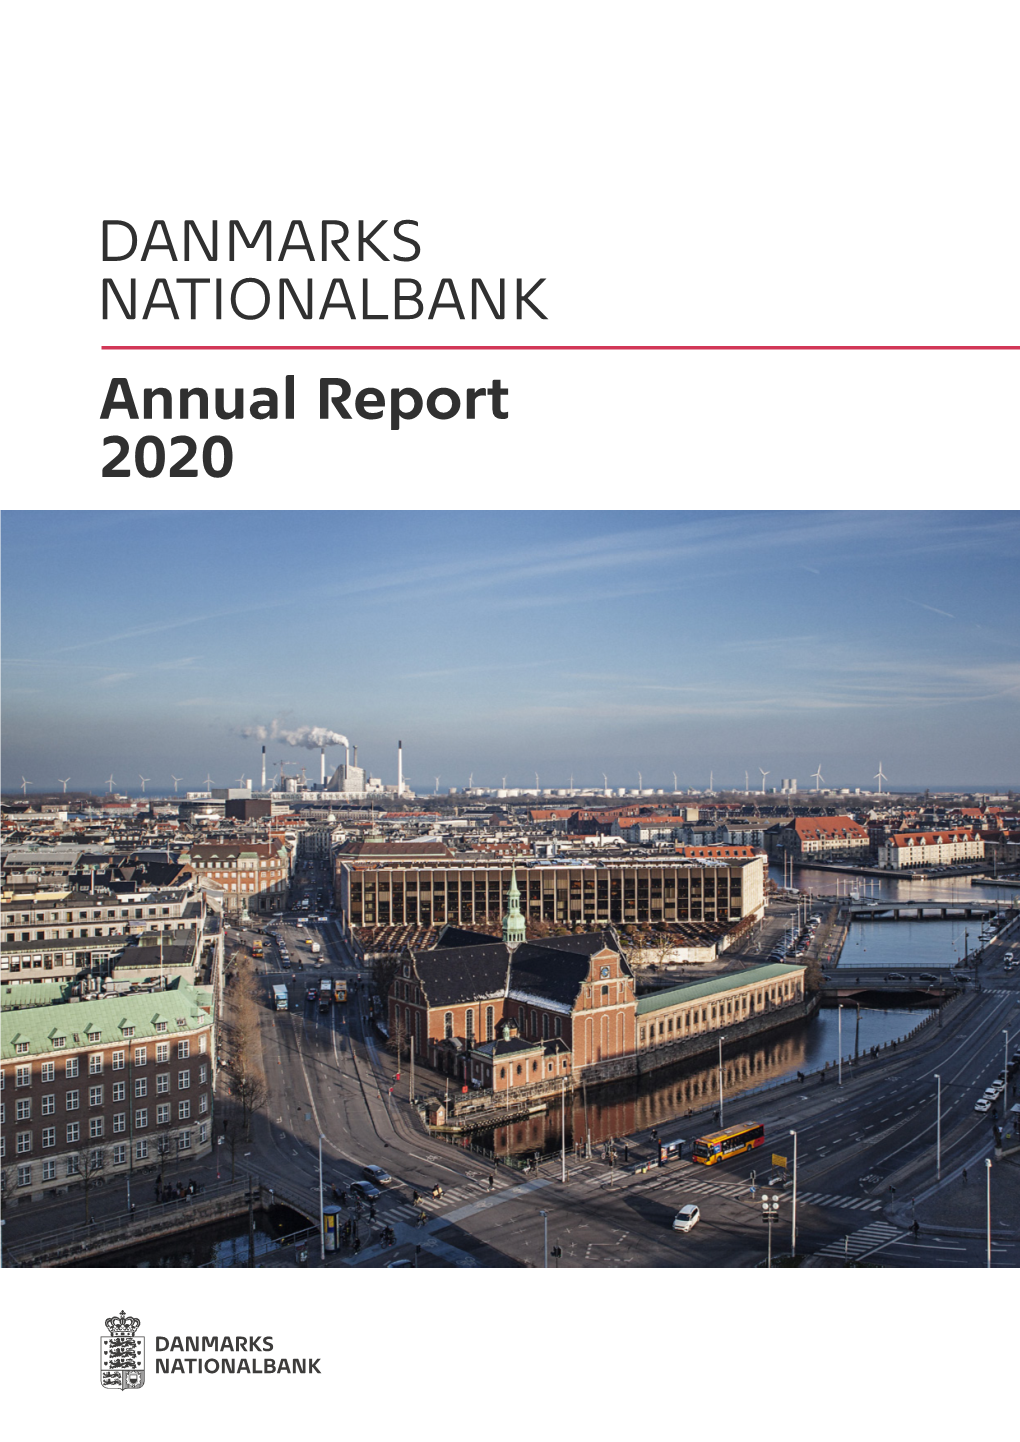 DANMARKS NATIONALBANK Annual Report 2020 2 DANMARKS NATIONALBANK ANNUAL REPORT 2020 DANMARKS NATIONALBANK Annual Report 2020